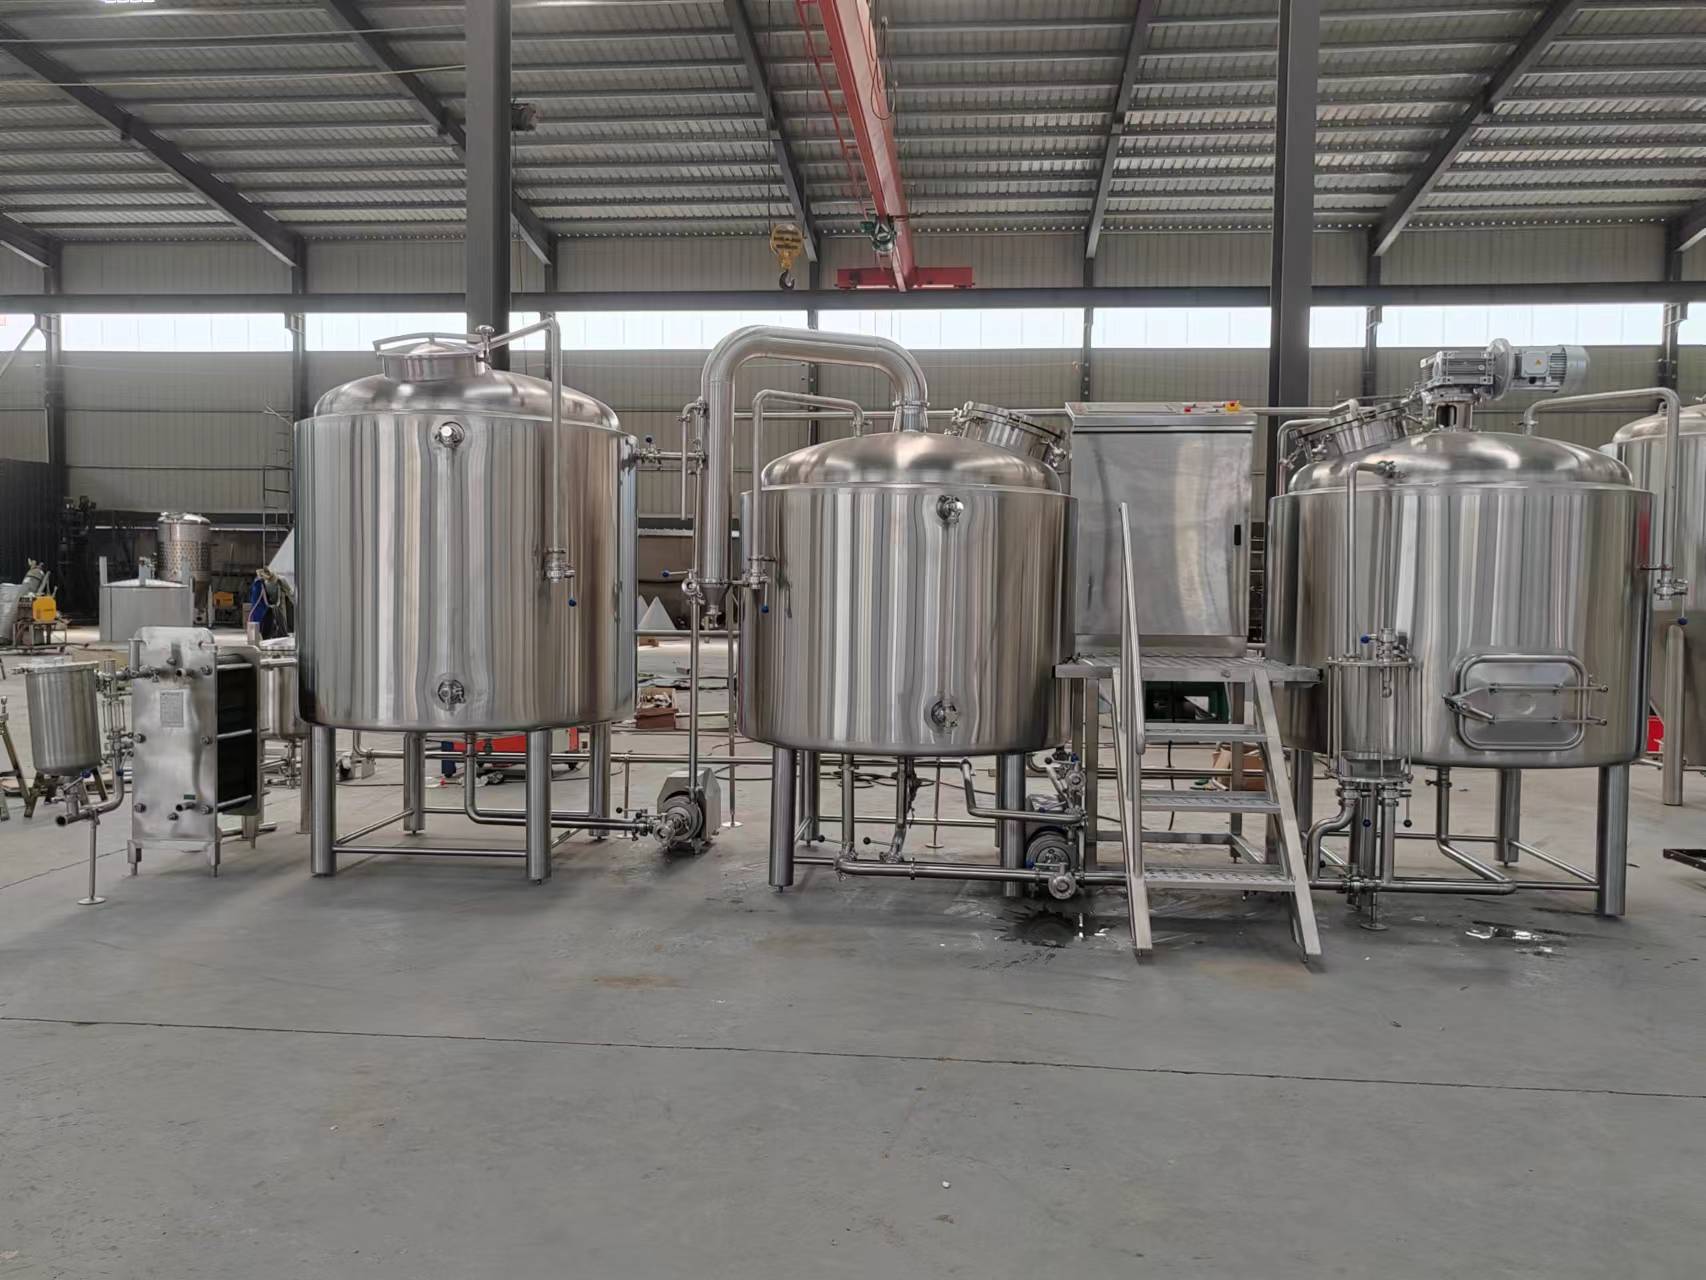 Korea New Brewery Project Equipment In WONJU GANGWON-DO